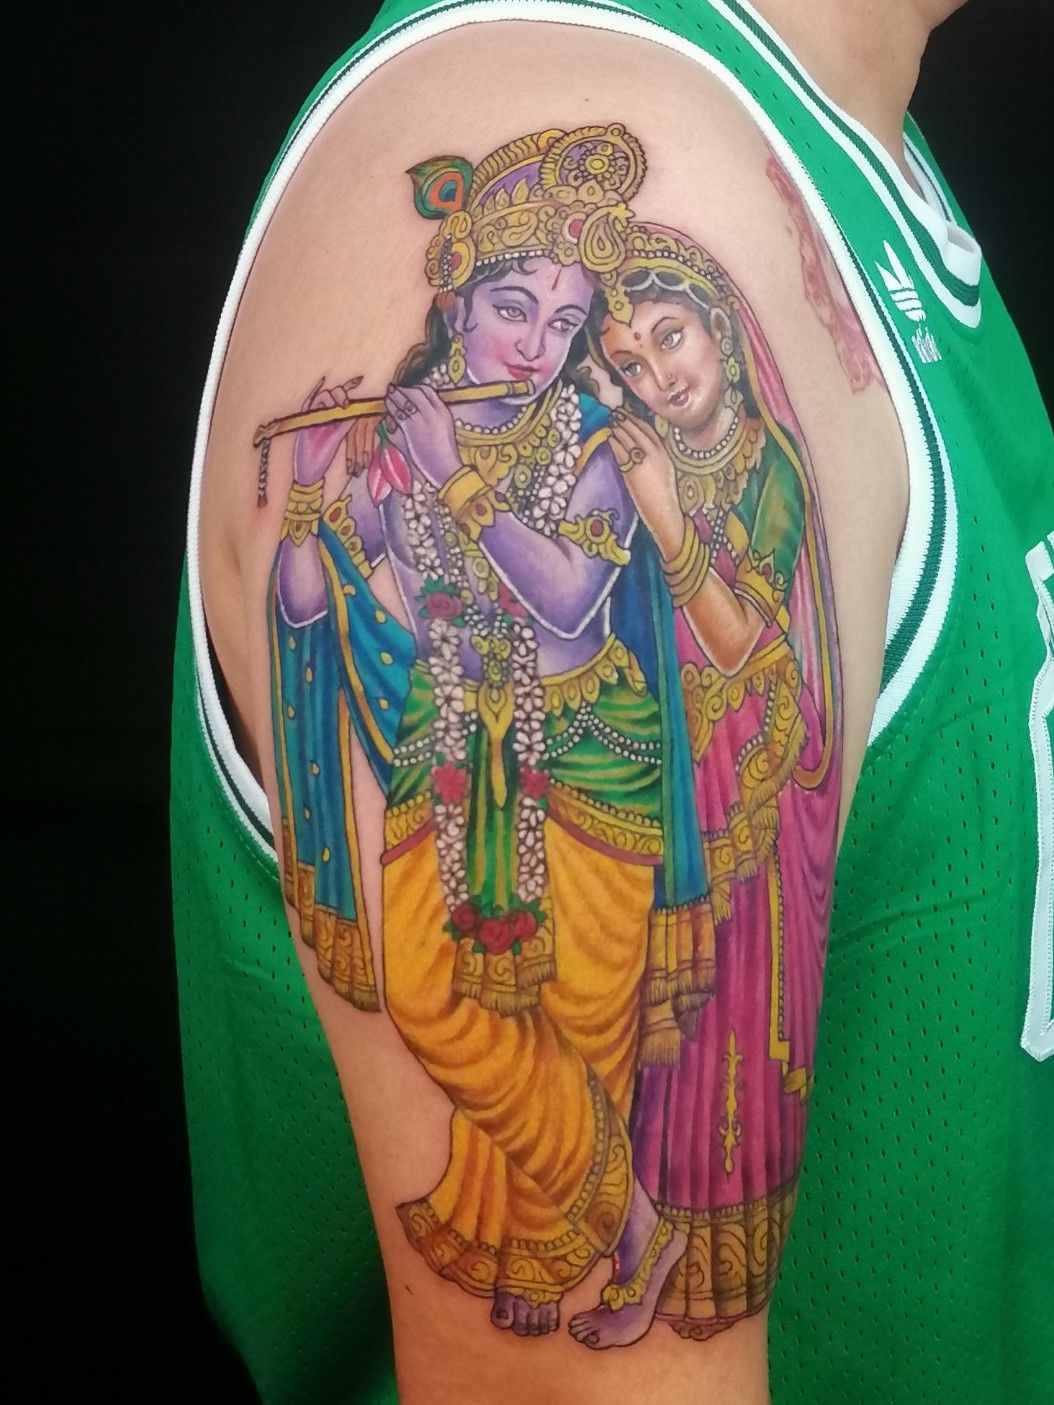 Tattoo uploaded by Vipul Chaudhary • Krishna tattoo |shree krishna tattoo  |Dwarkadhish tattoo |Kanha tattoo • Tattoodo